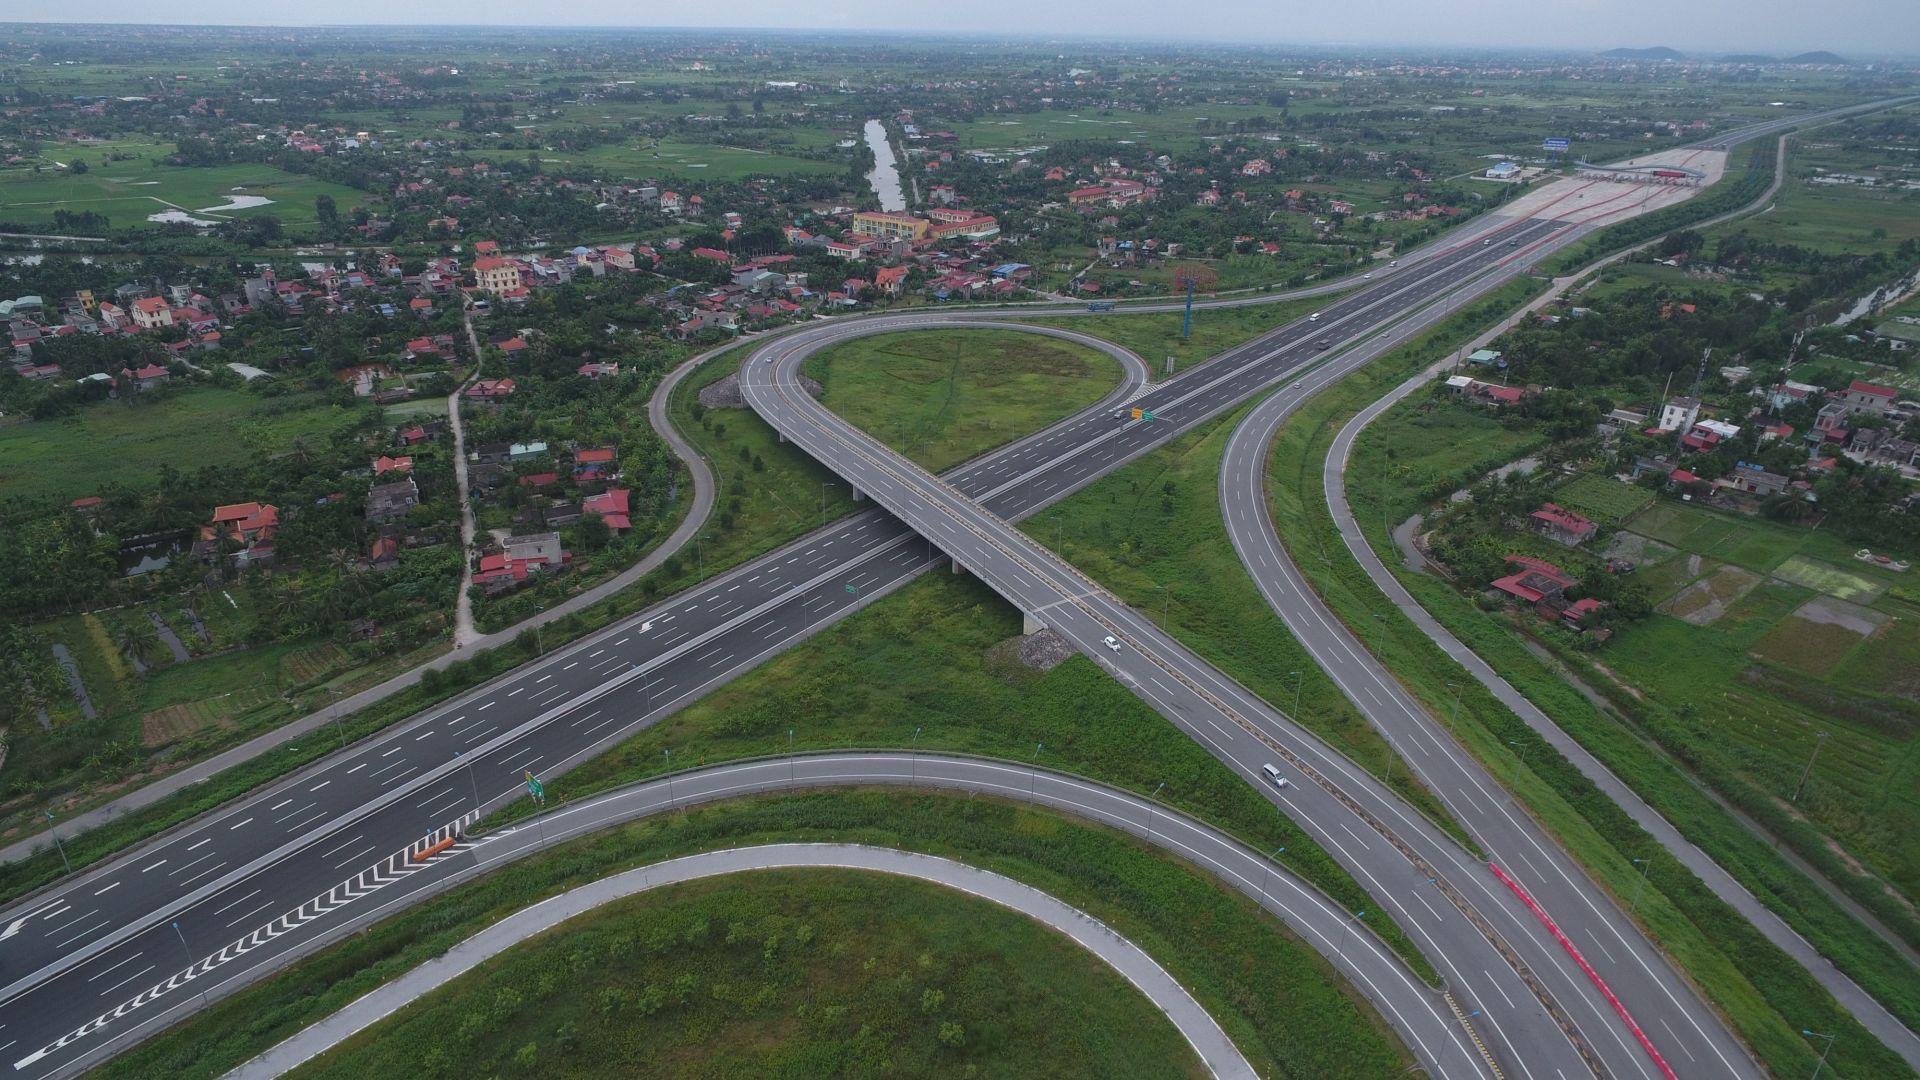 Hệ thống hạ tầng giao thông được đầu tư hiện đại tại khu vực phía Đông Hà Nội.